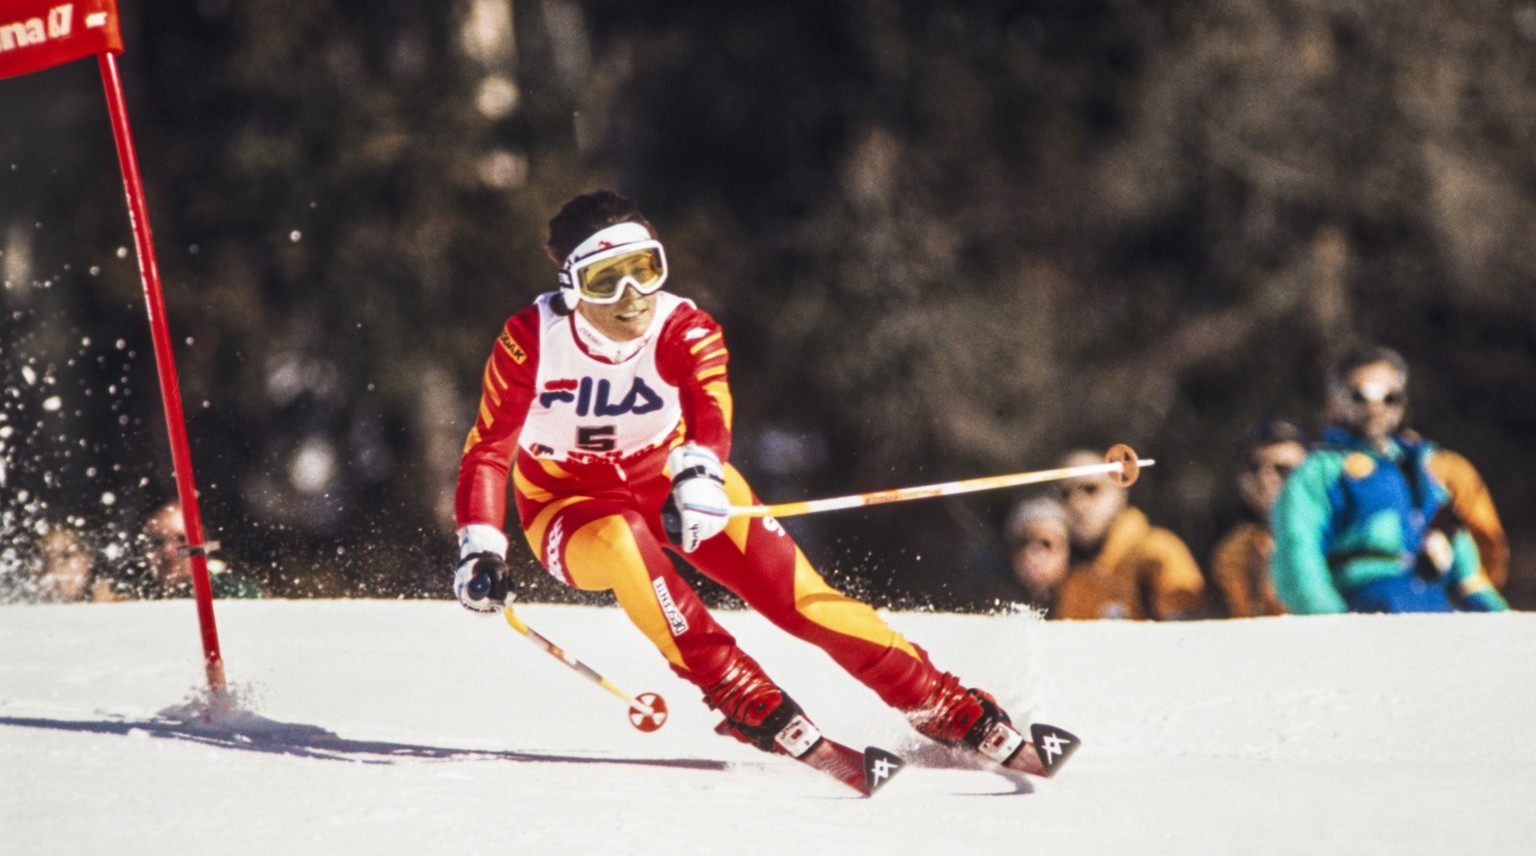 Maria Walliser unterwegs zu ihrem dritten Platz im Riesenslalom, aufgenommen am 5. Februar 1987 bei der Alpinen Skiweltmeisterschaft in Crans-Montana, Kanton Wallis. (KEYSTONE/Str)